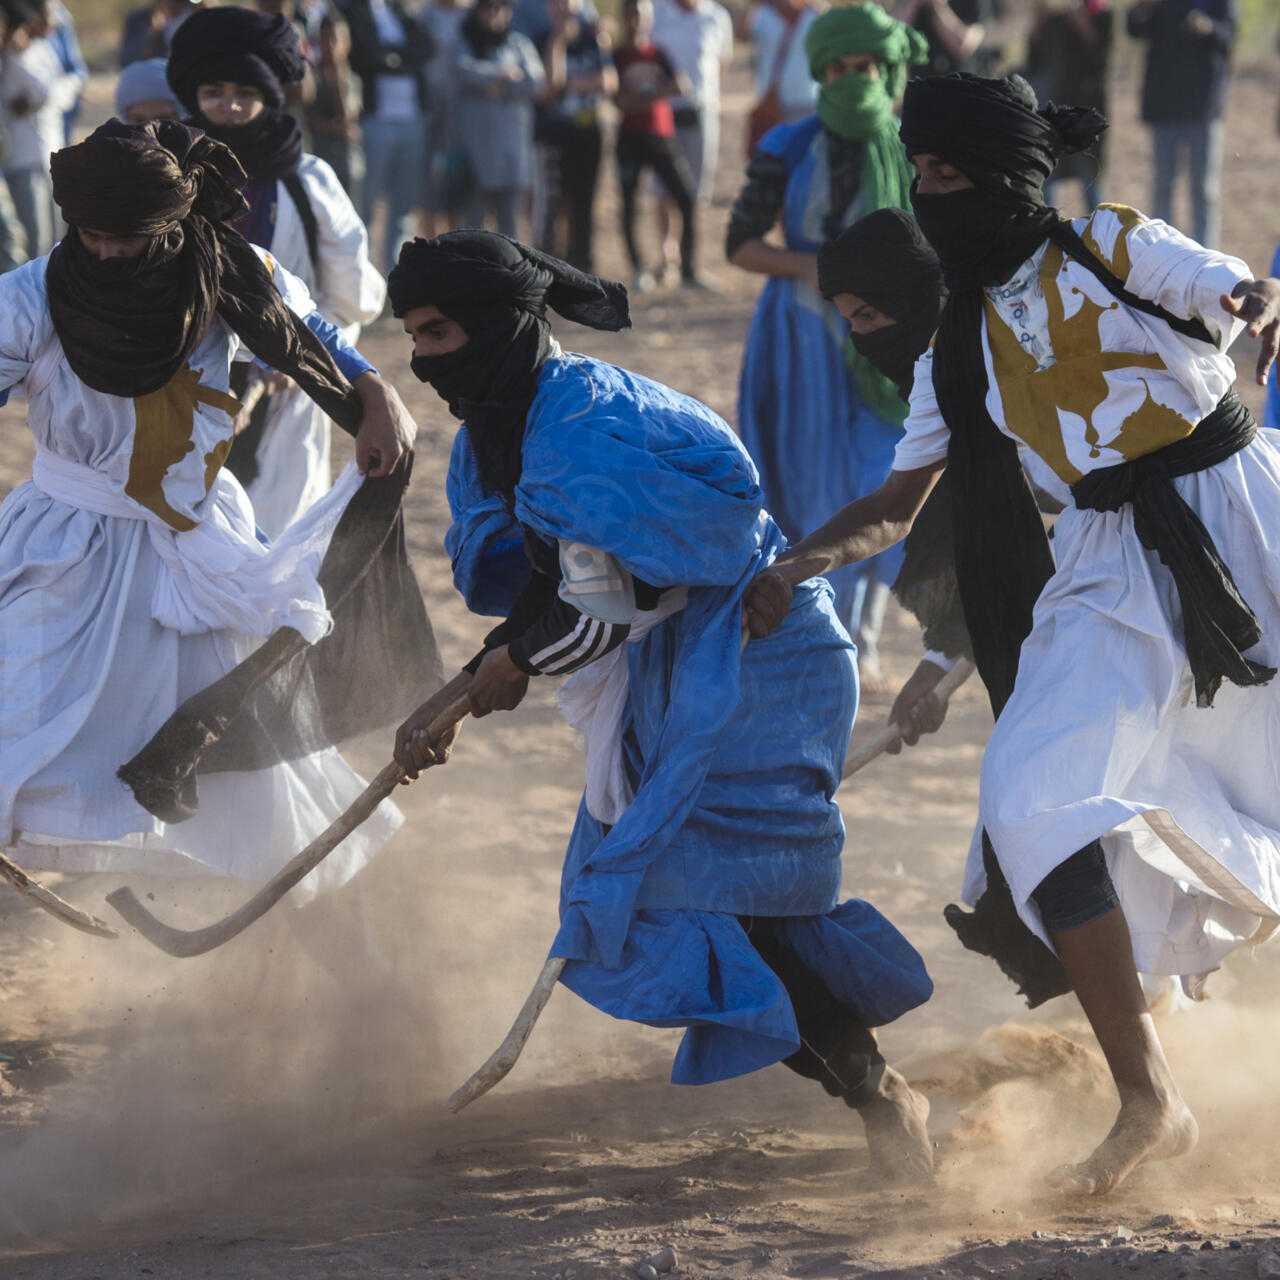 Au Maroc, les nomades font la promotion d'un sport traditionnel qui fait partie de leur patrimoine ancestral "le hockey sur sable". Le hockey sur sable est un ancien passe-temps chez les nomades.  Tout ce dont vous avez besoin est une balle faite de laine de chameau et de bâtons de palmier. #hockeysursable,#marocancestral